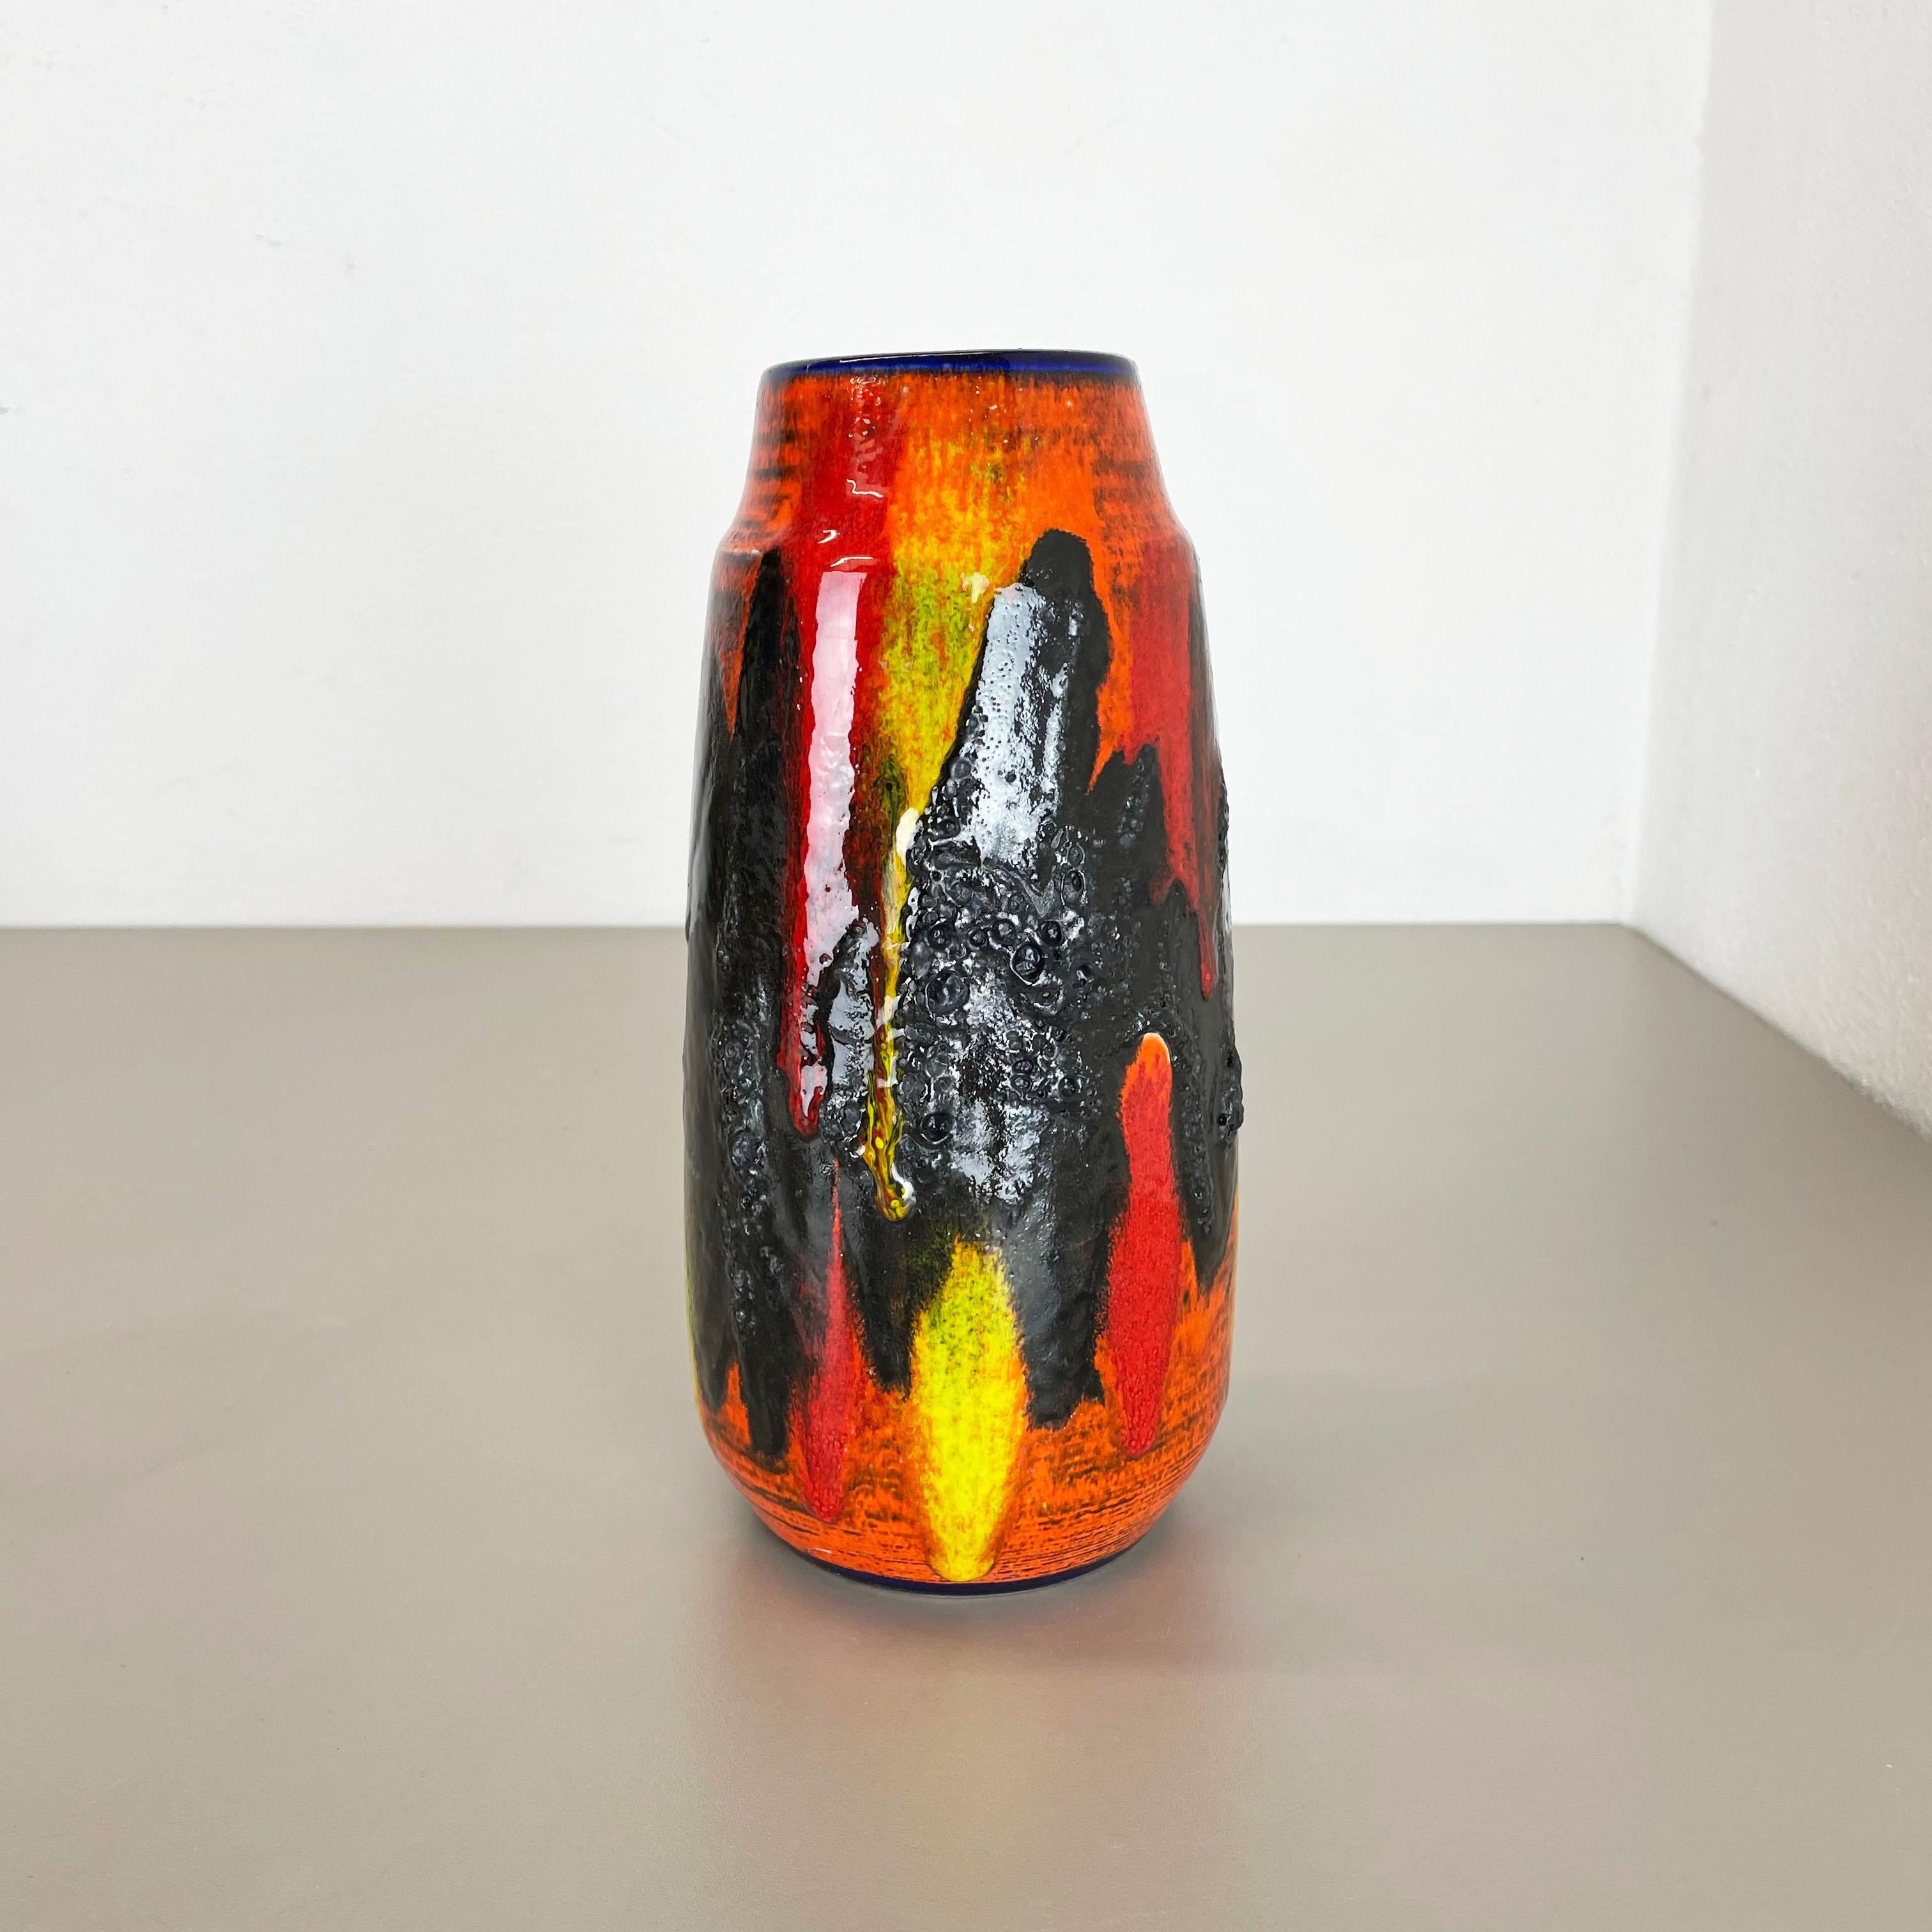 Artikel:

Fette Lavakunstvase, schwere brutalistische Glasur


Produzent:

Scheurich, Deutschland



Jahrzehnt:

1970s




Diese originelle Vintage-Vase wurde in den 1970er Jahren in Deutschland hergestellt. Sie ist aus Keramik in